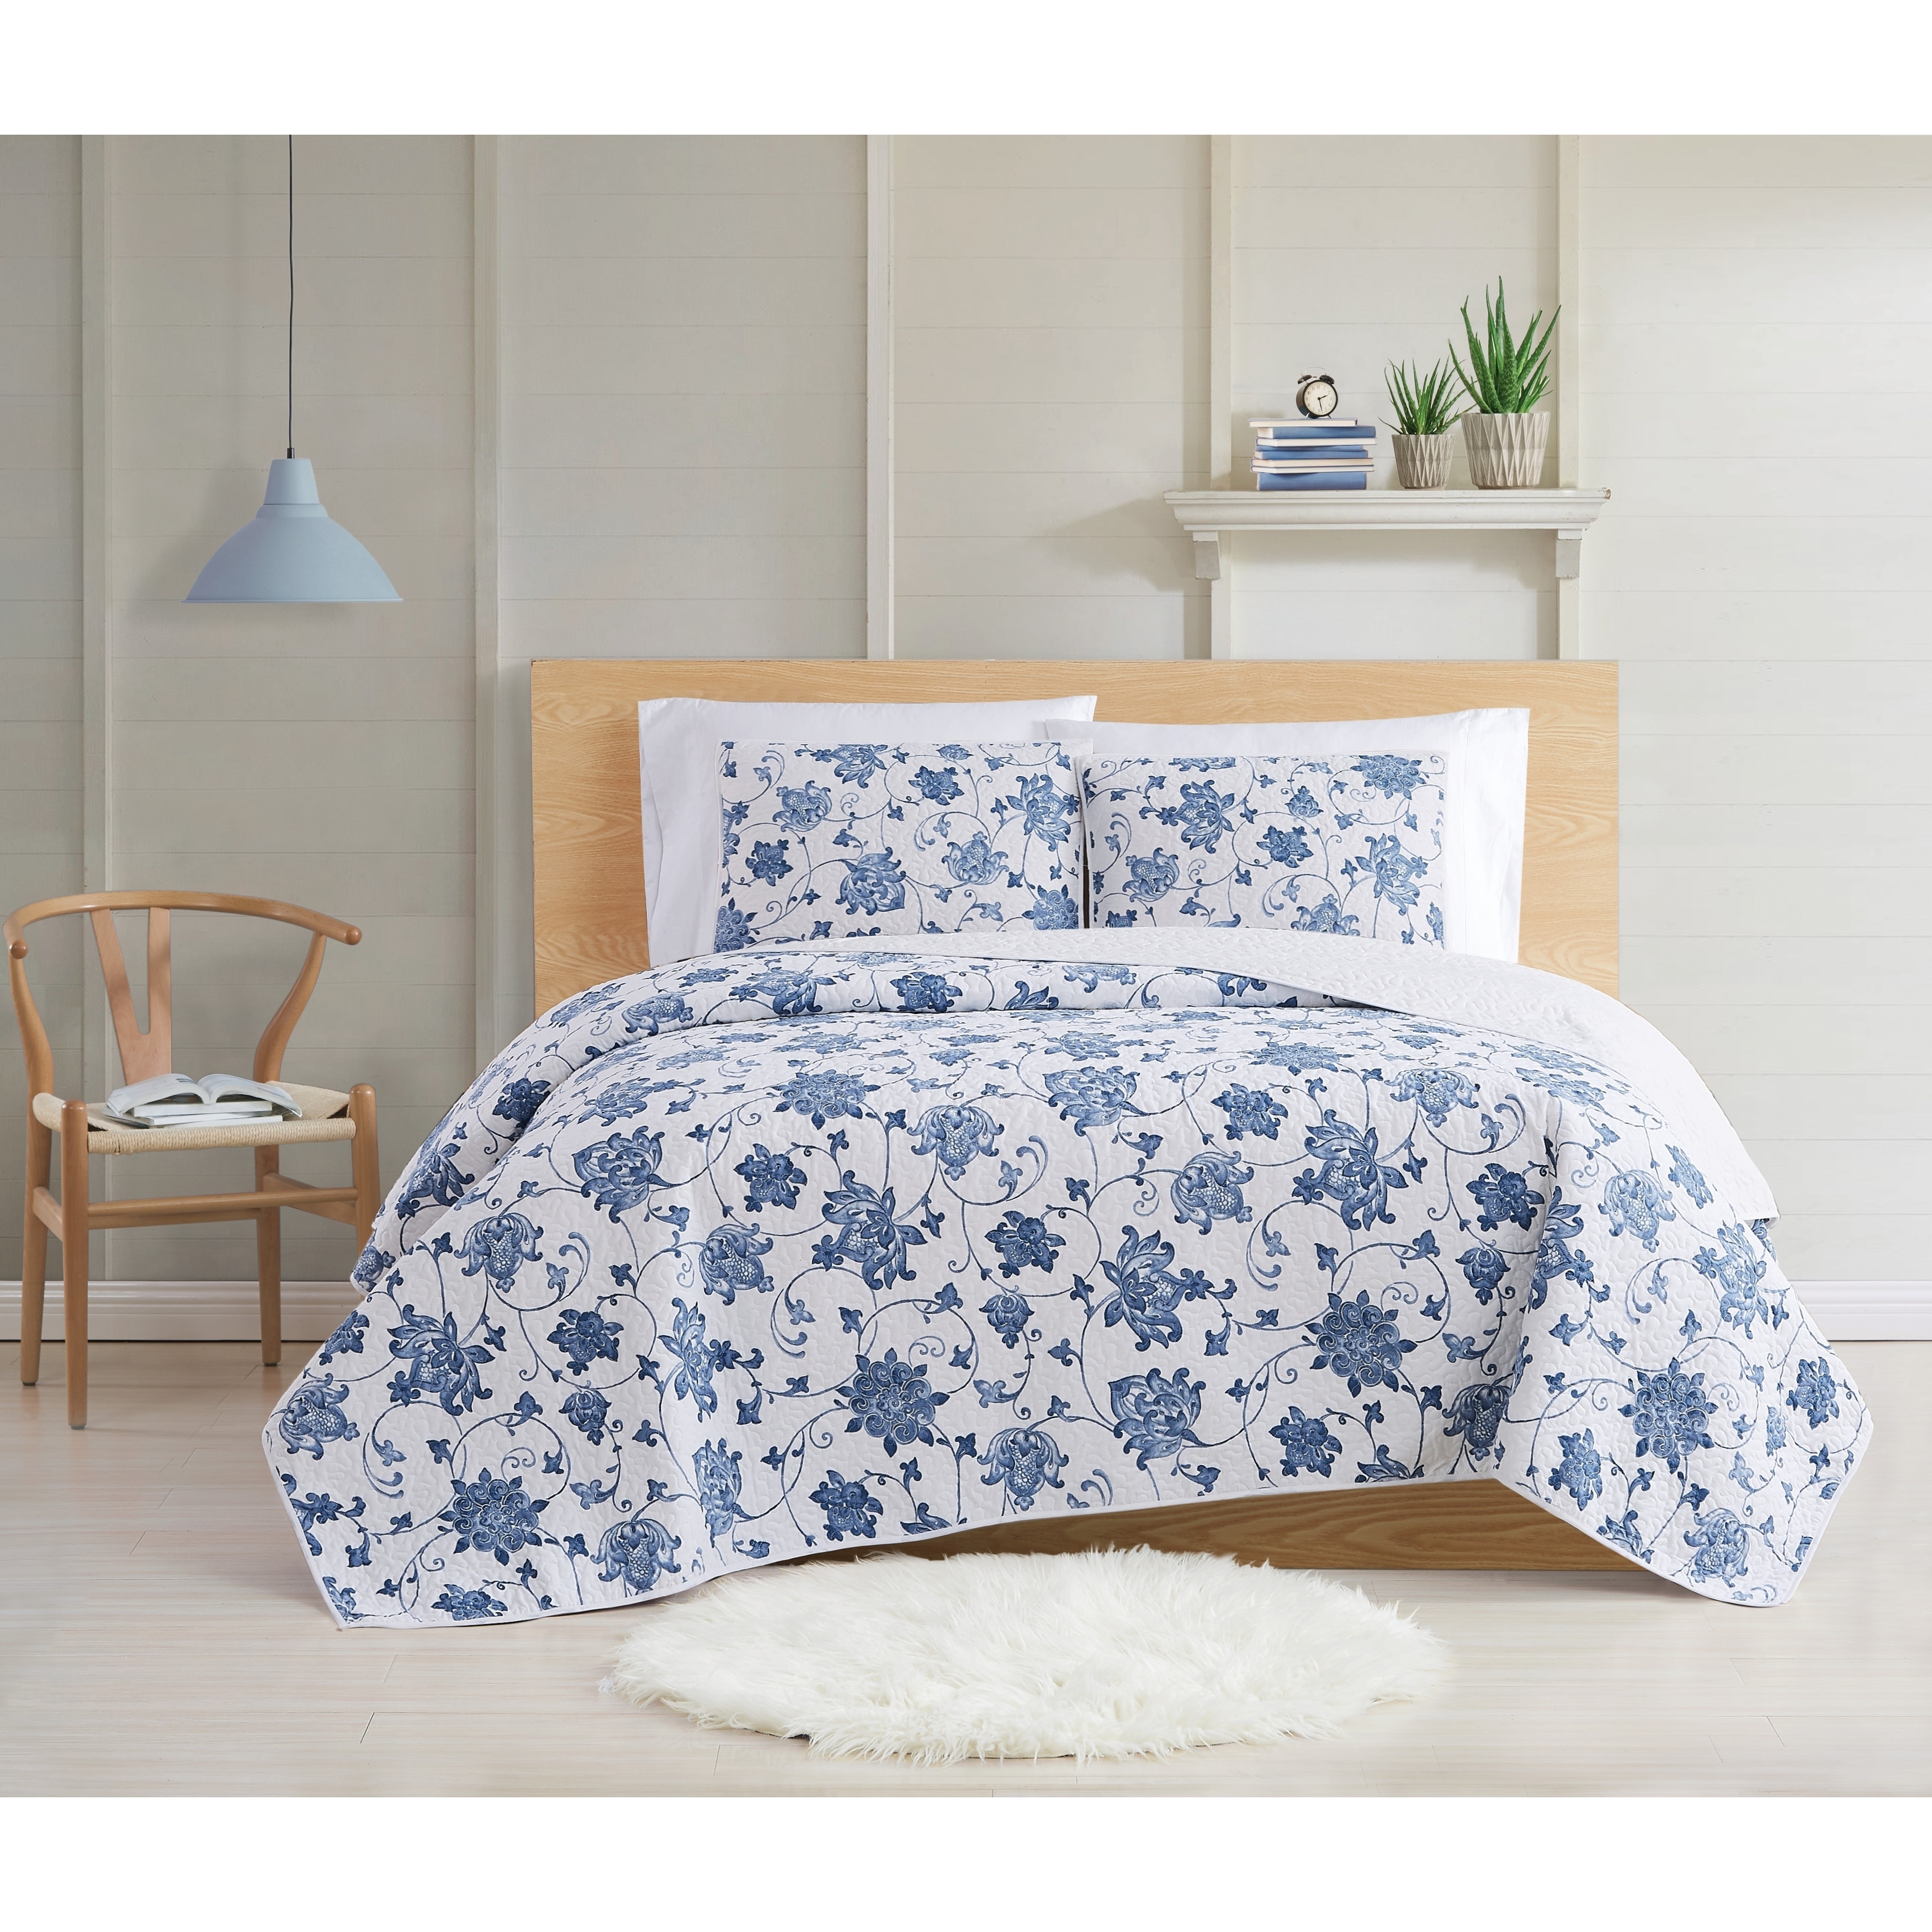 Bedspread Sanatoga Reversible 100%Cotton 3-Piece Queen-Size Quilt Set Coverlet 